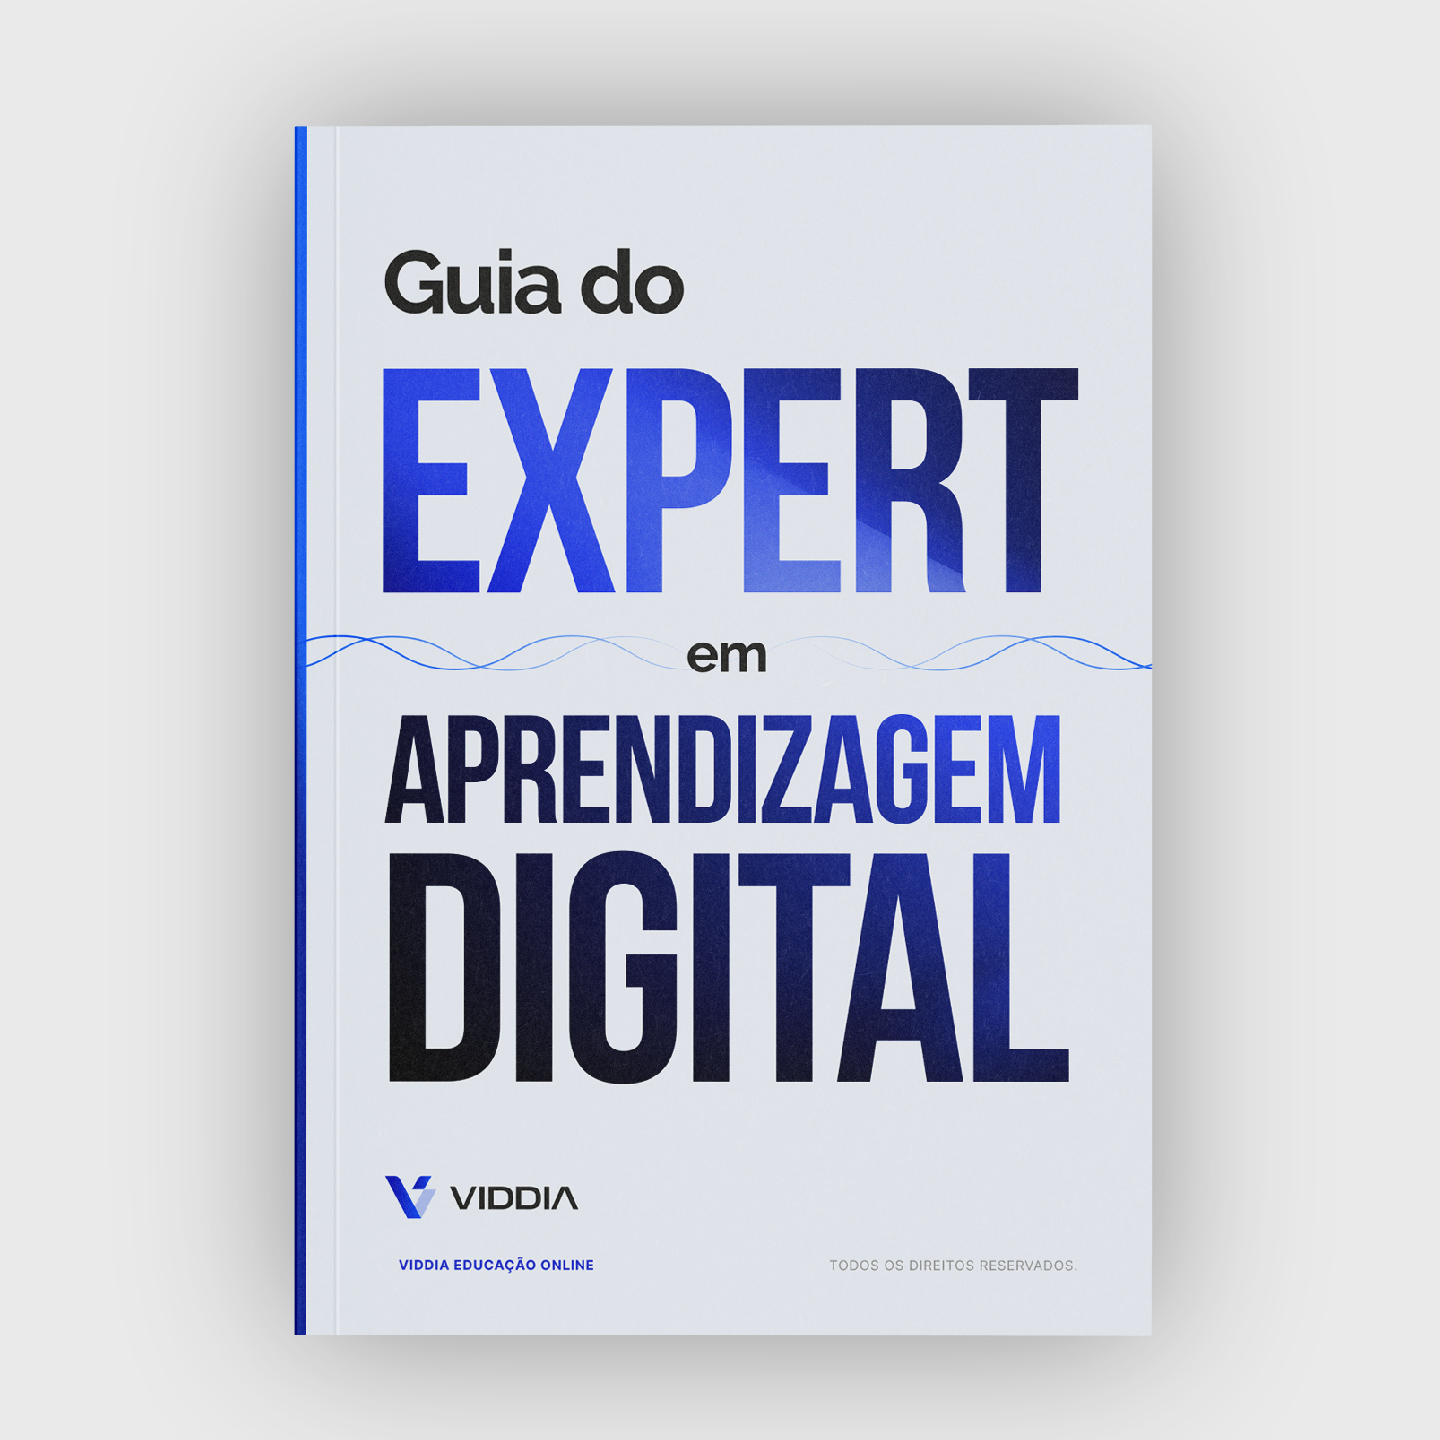 Guia do Expert em Aprendizagem Digital